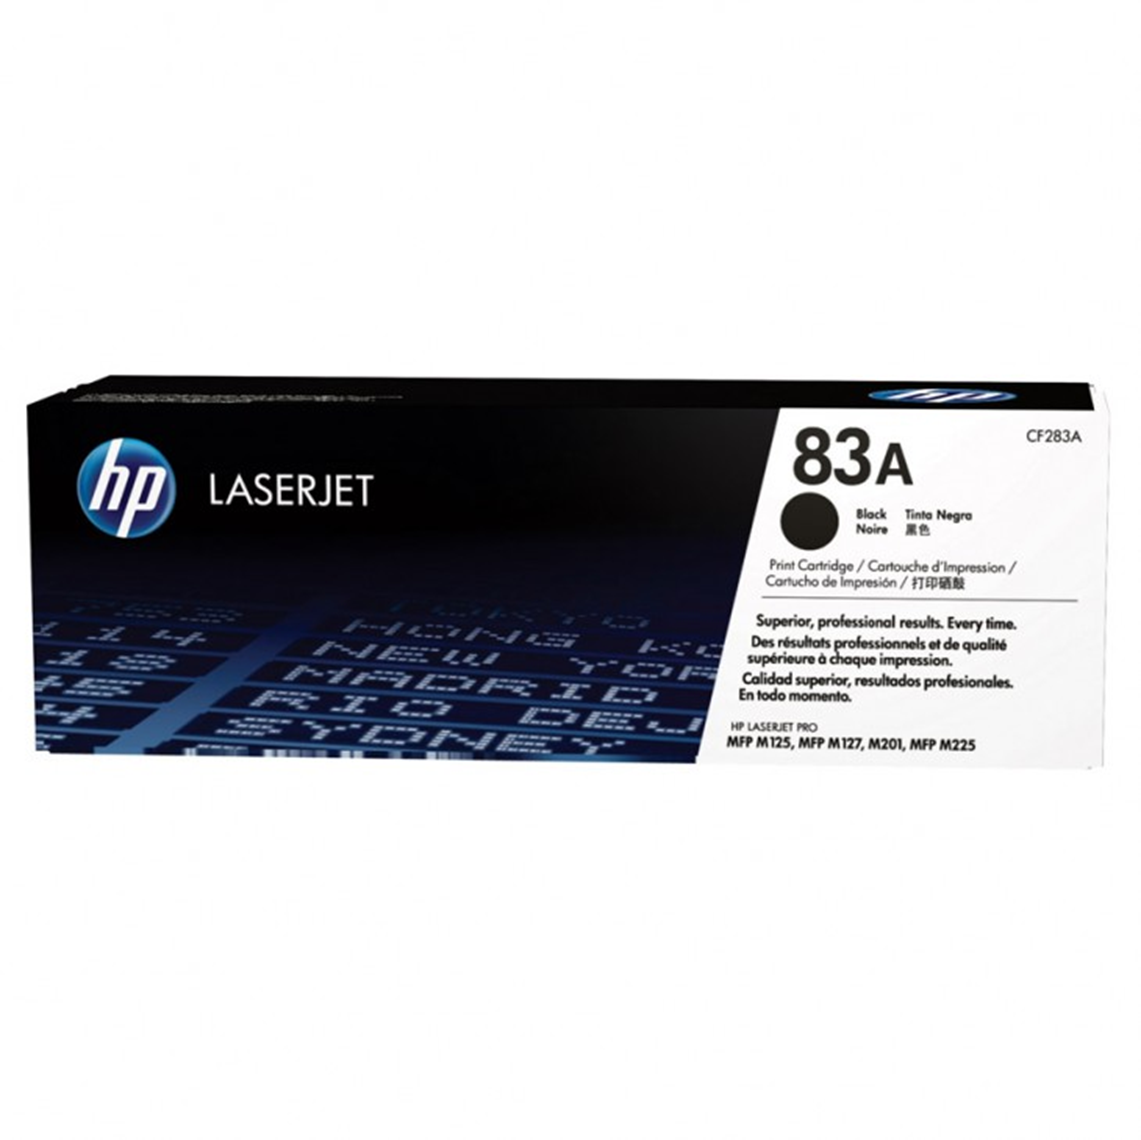 HP LaserJet Pro MFP M127fn 代用碳粉規格